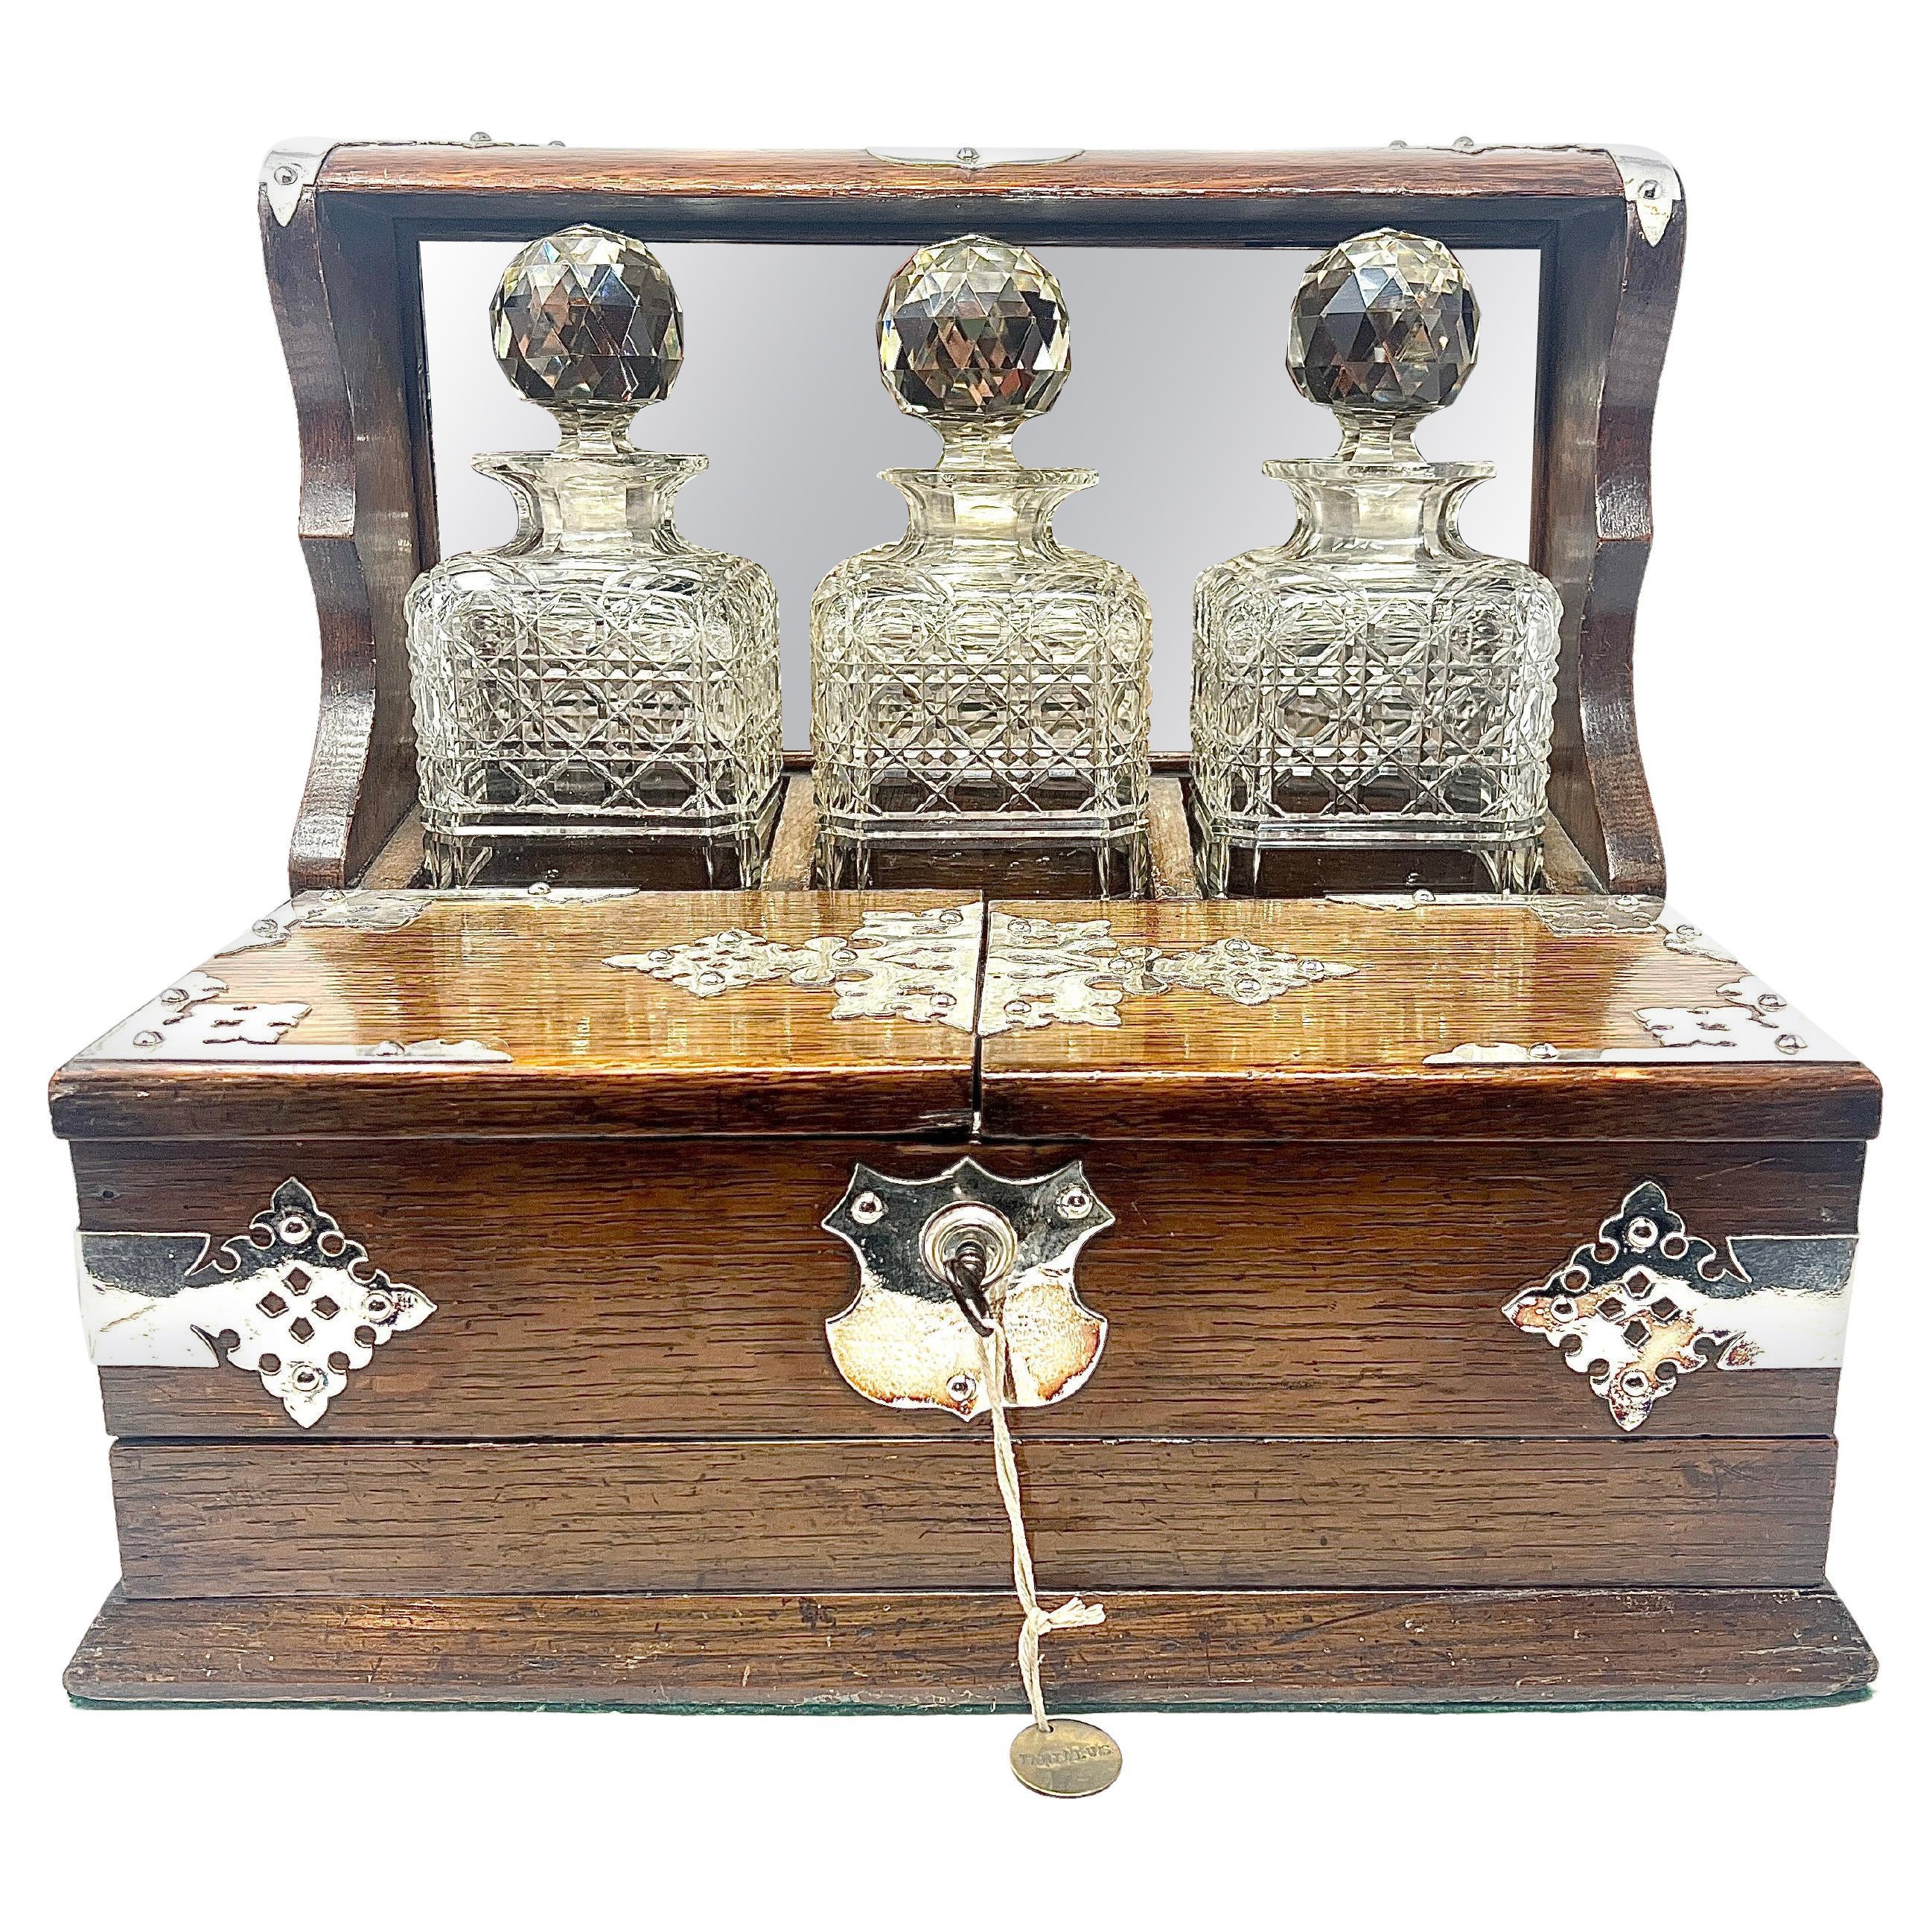 Ancienne boîte de jeu anglaise Sheffield en chêne doré et cristal monté sur argent